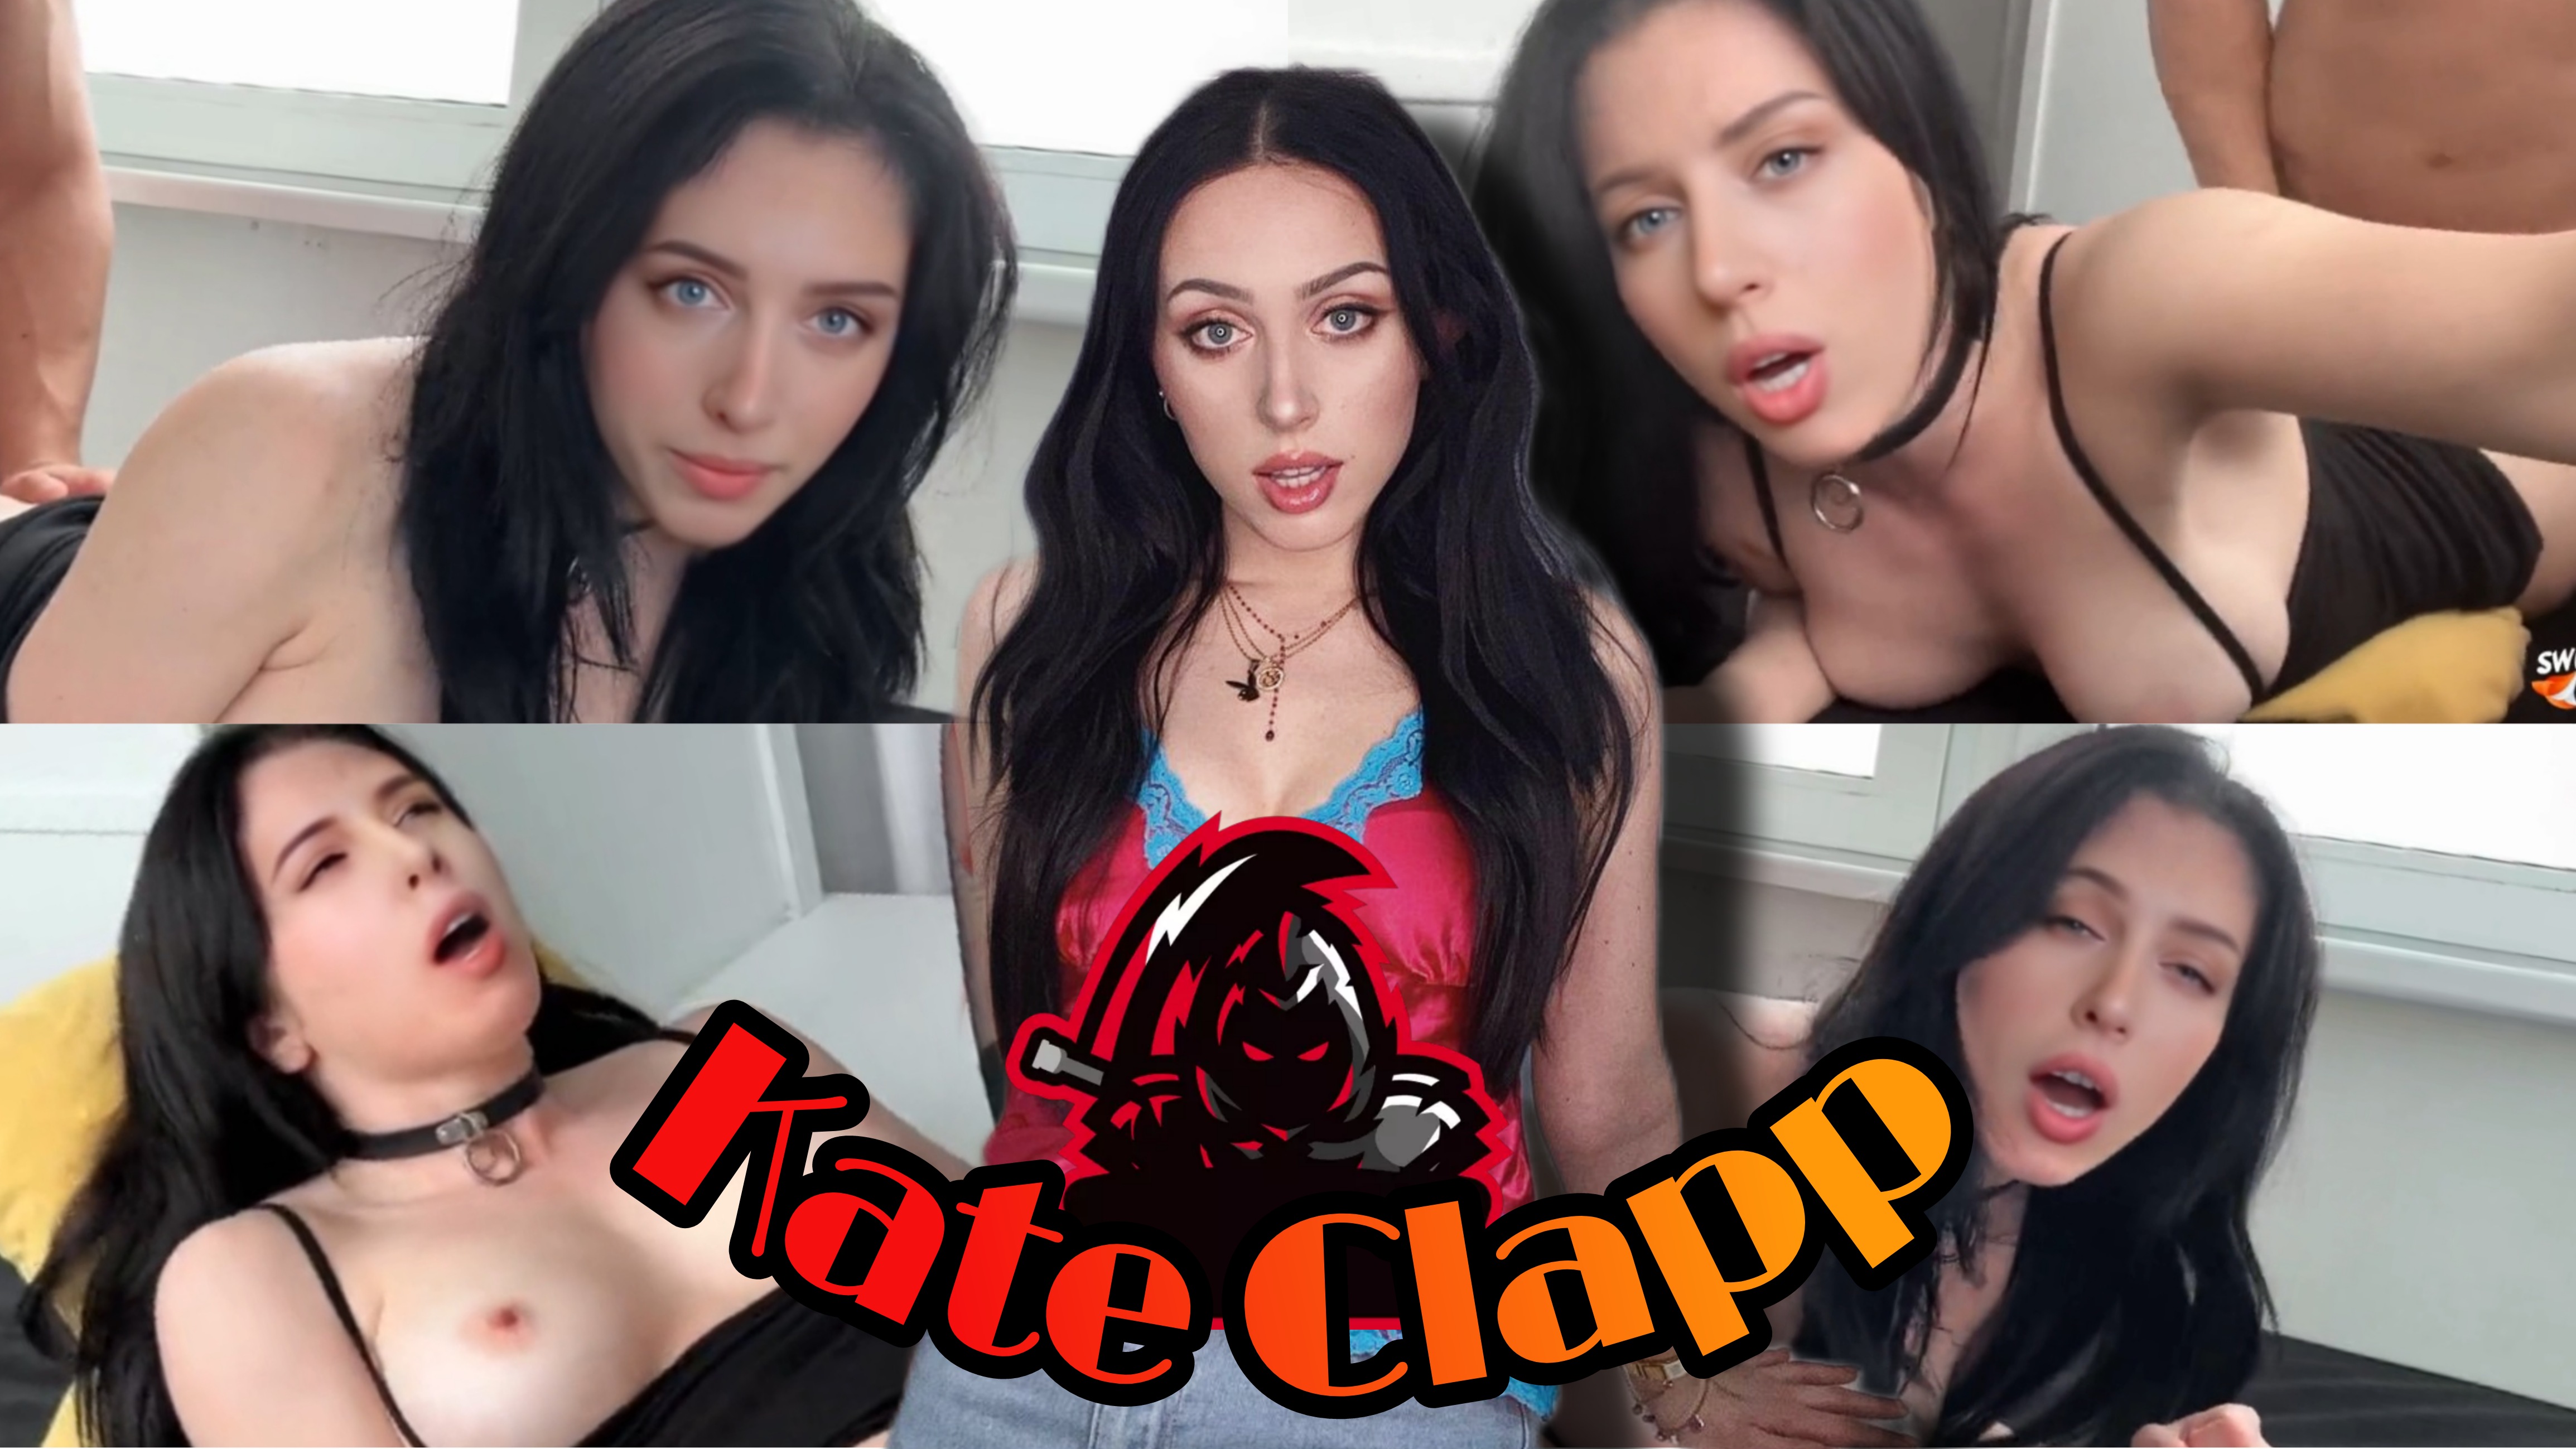 Kate Clapp - I Met a Crazy Slut